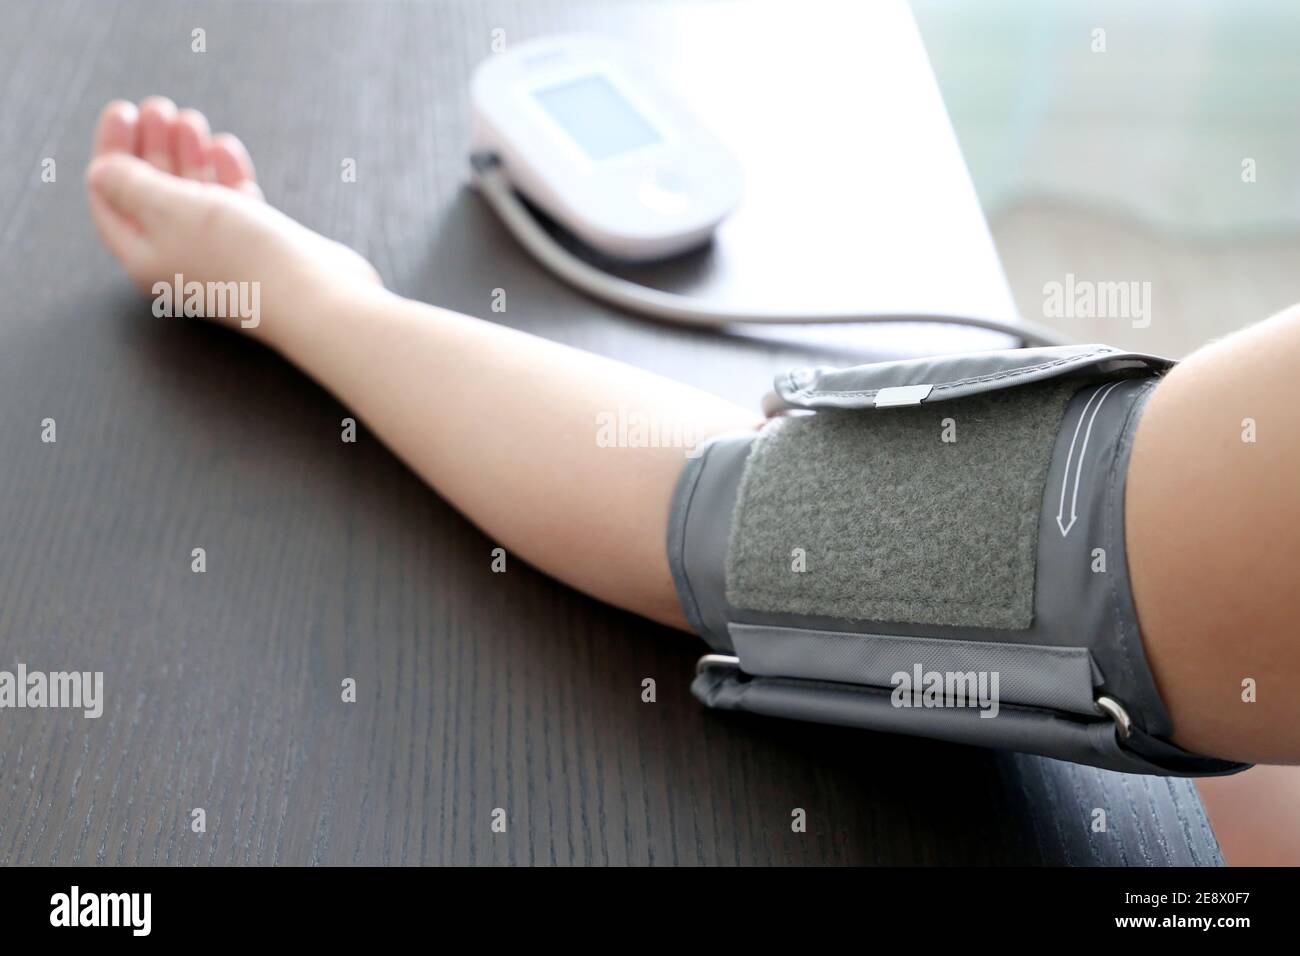 Donna che misura la pressione sanguigna con tonometro elettronico digitale, mano femminile da vicino. Concetto di assistenza sanitaria, ipertensione e cardiologia Foto Stock